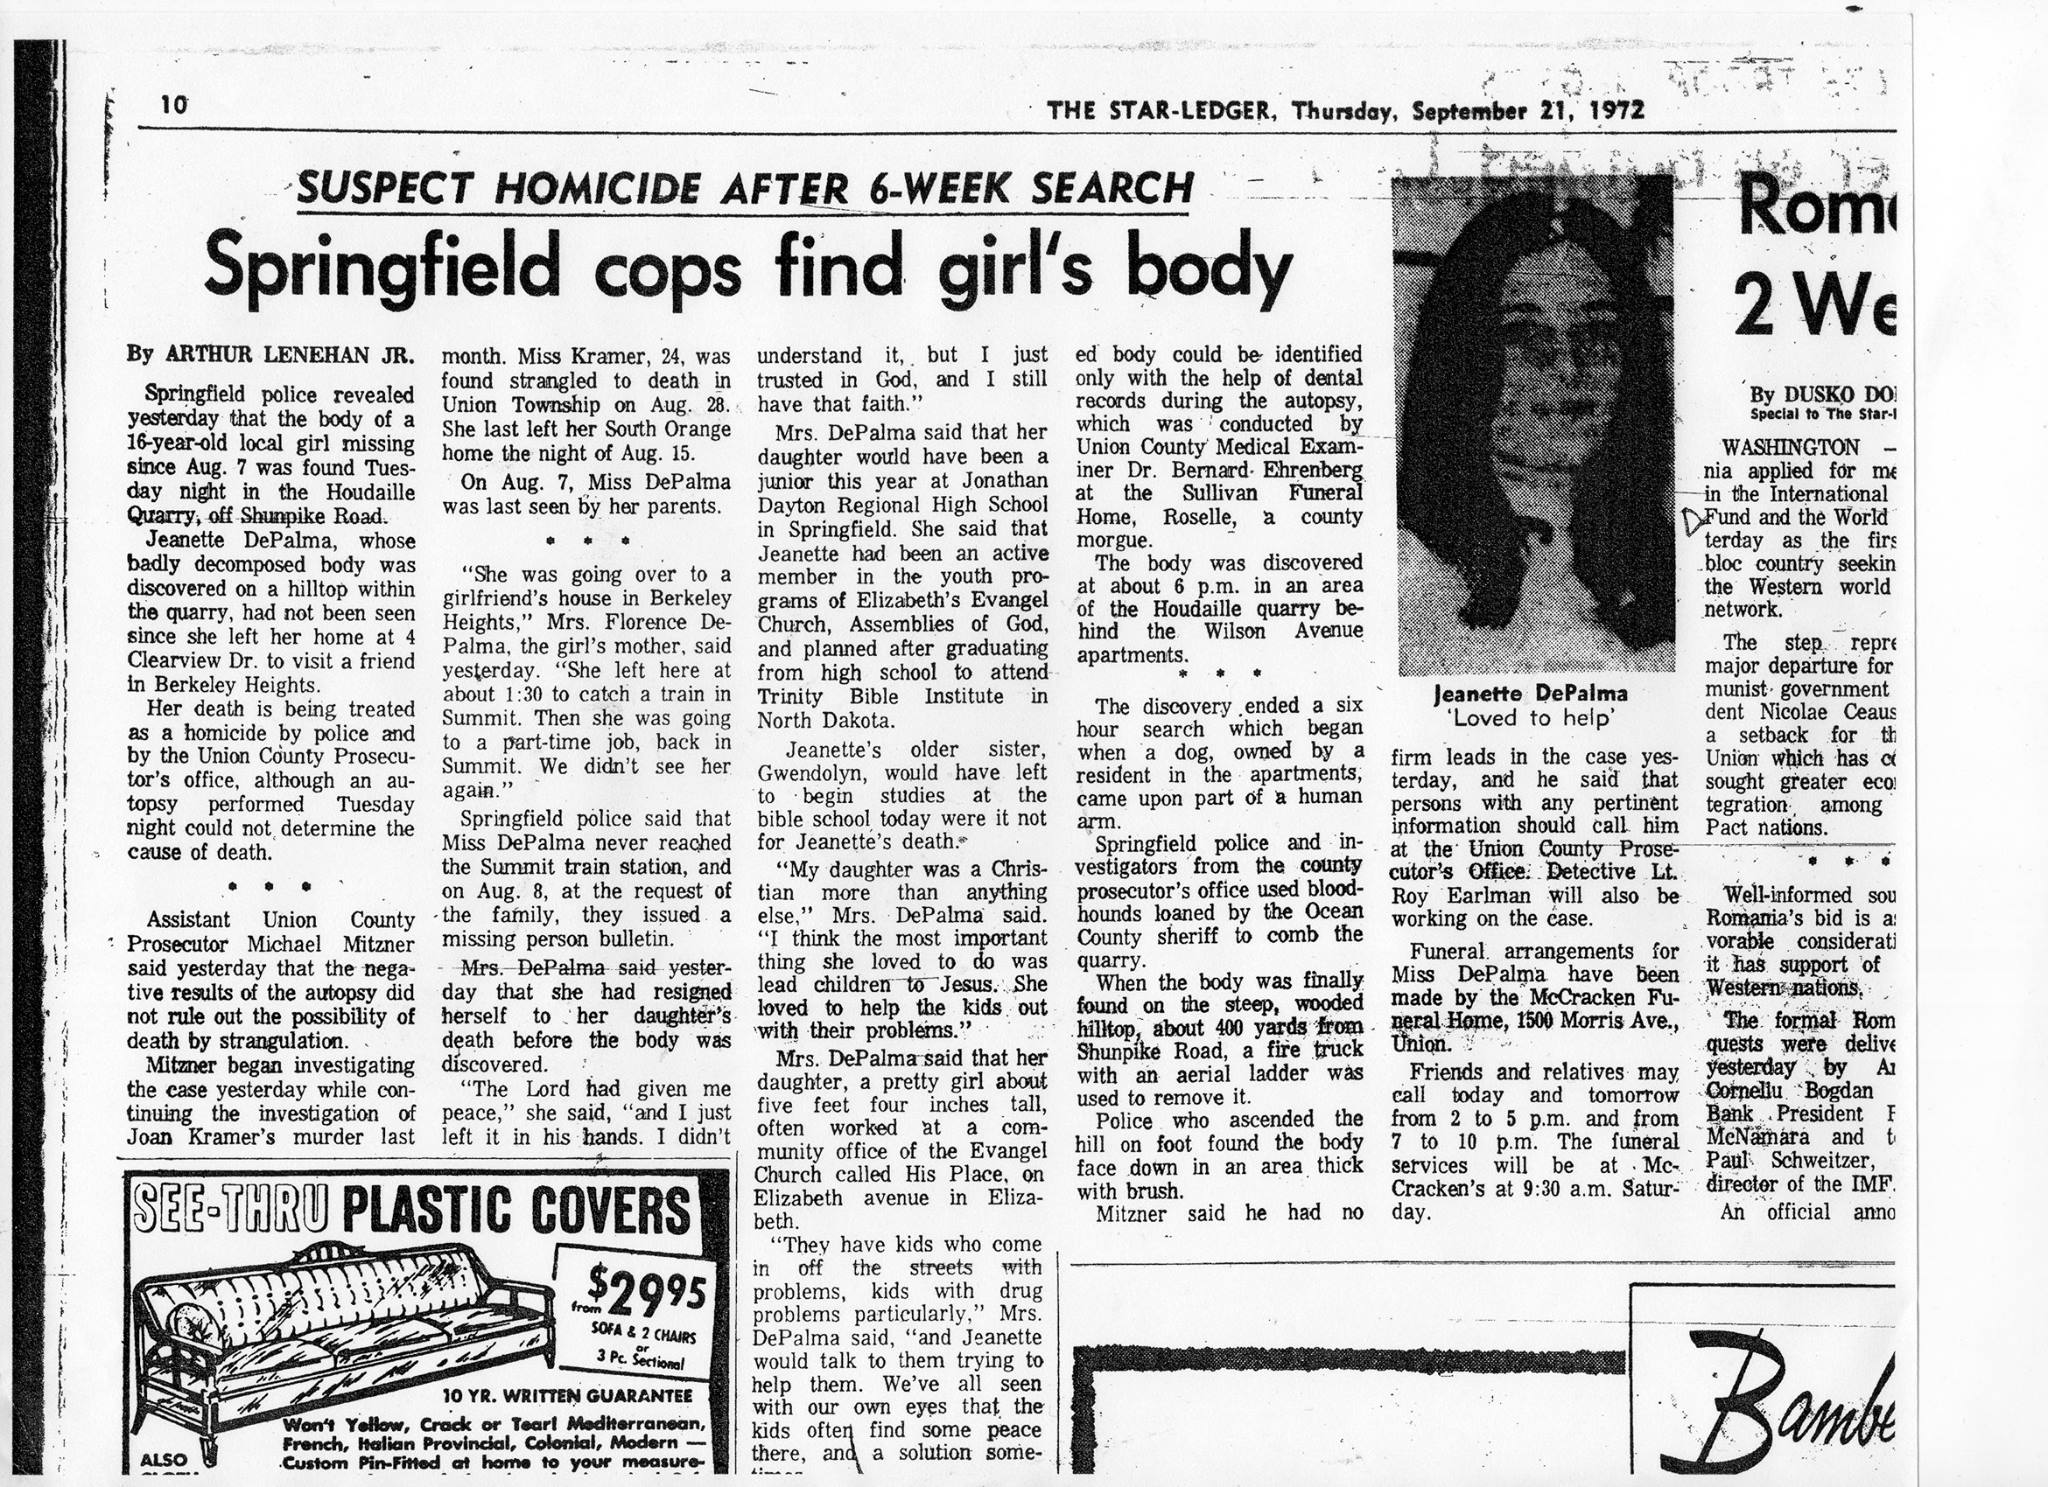 Un periódico local reporta la noticia del hallazgo del cuerpo en descomposición.